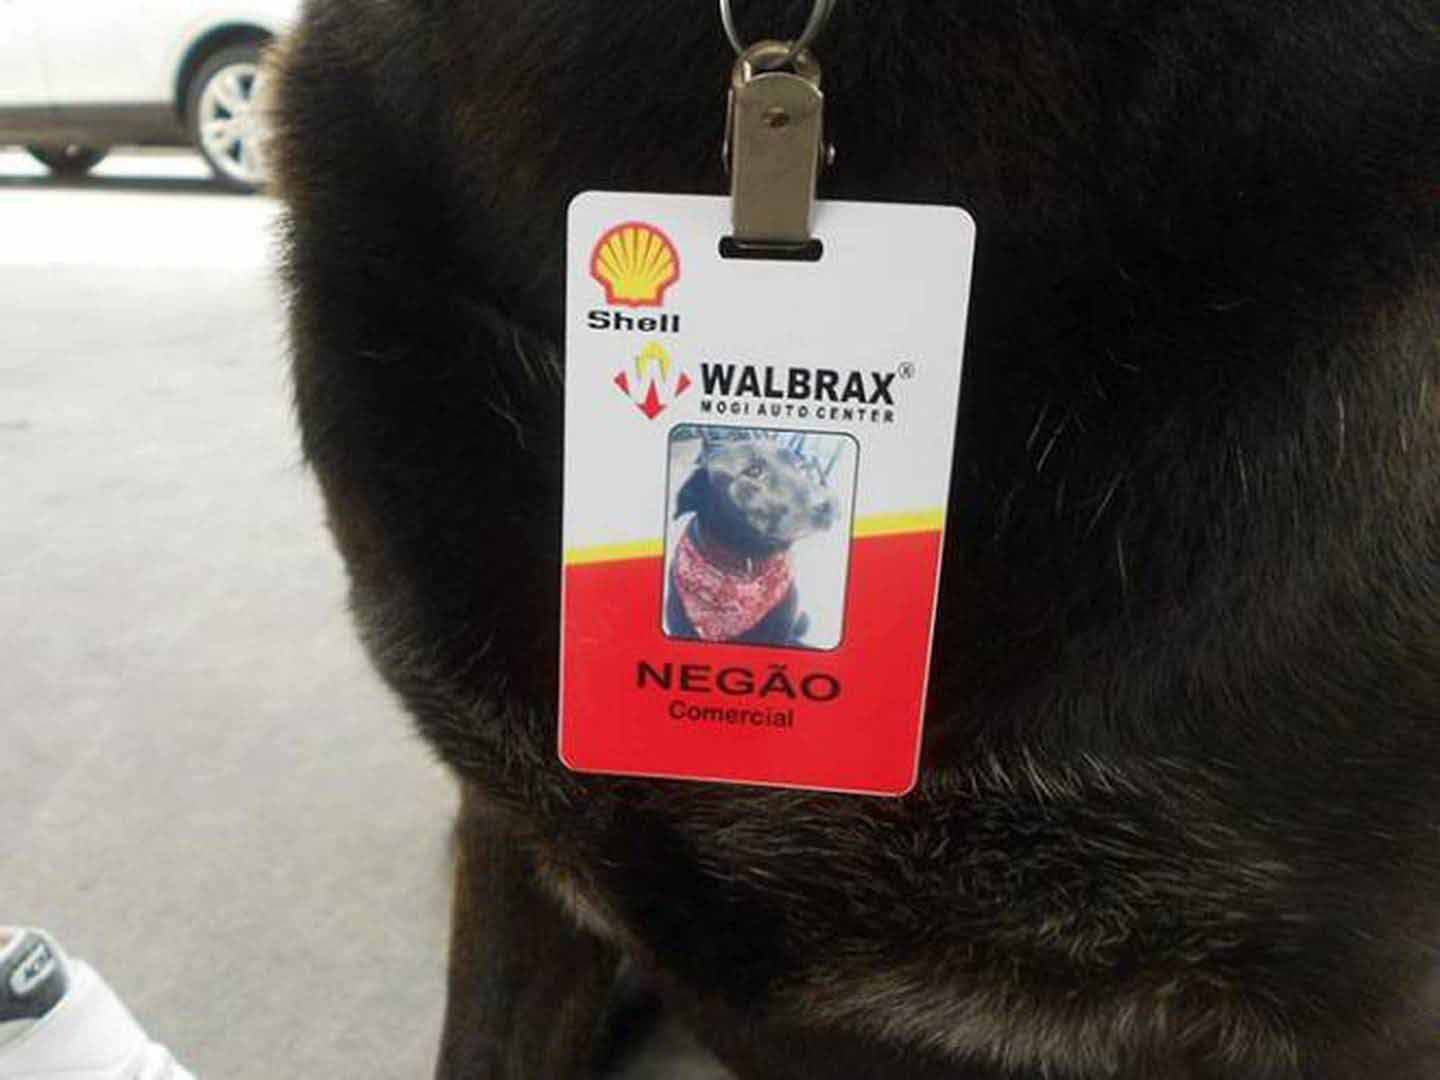 Le badge de Negão le chien comportant sa photo, son nom et sa fonction